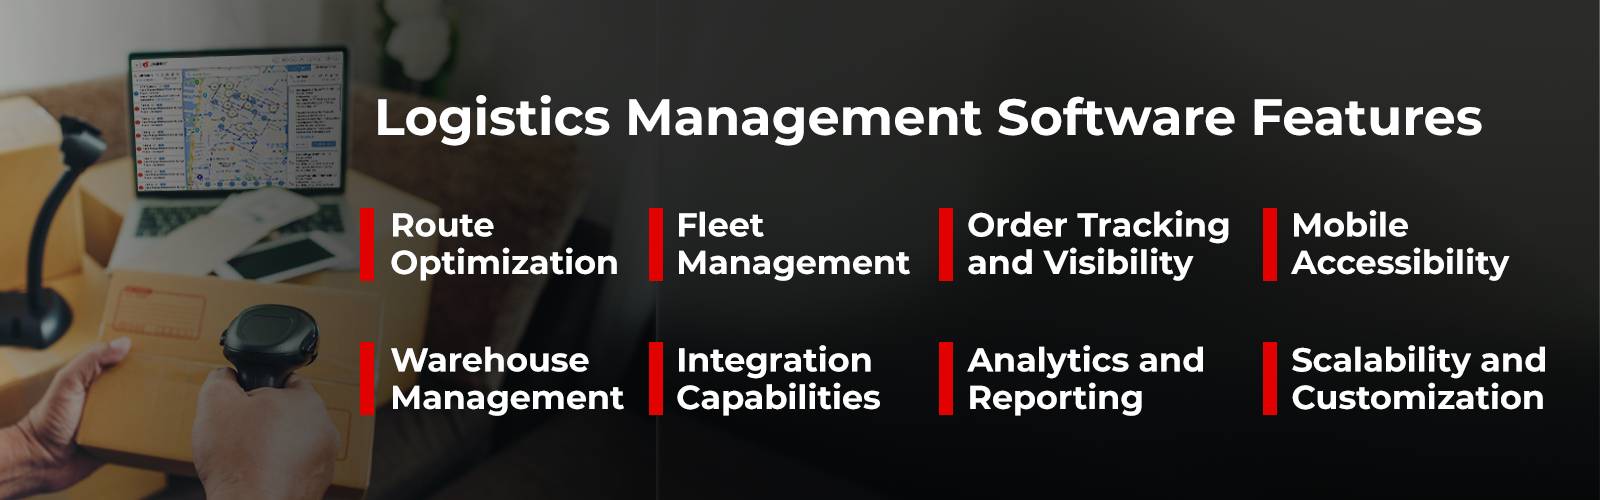 Características del software de gestión logística